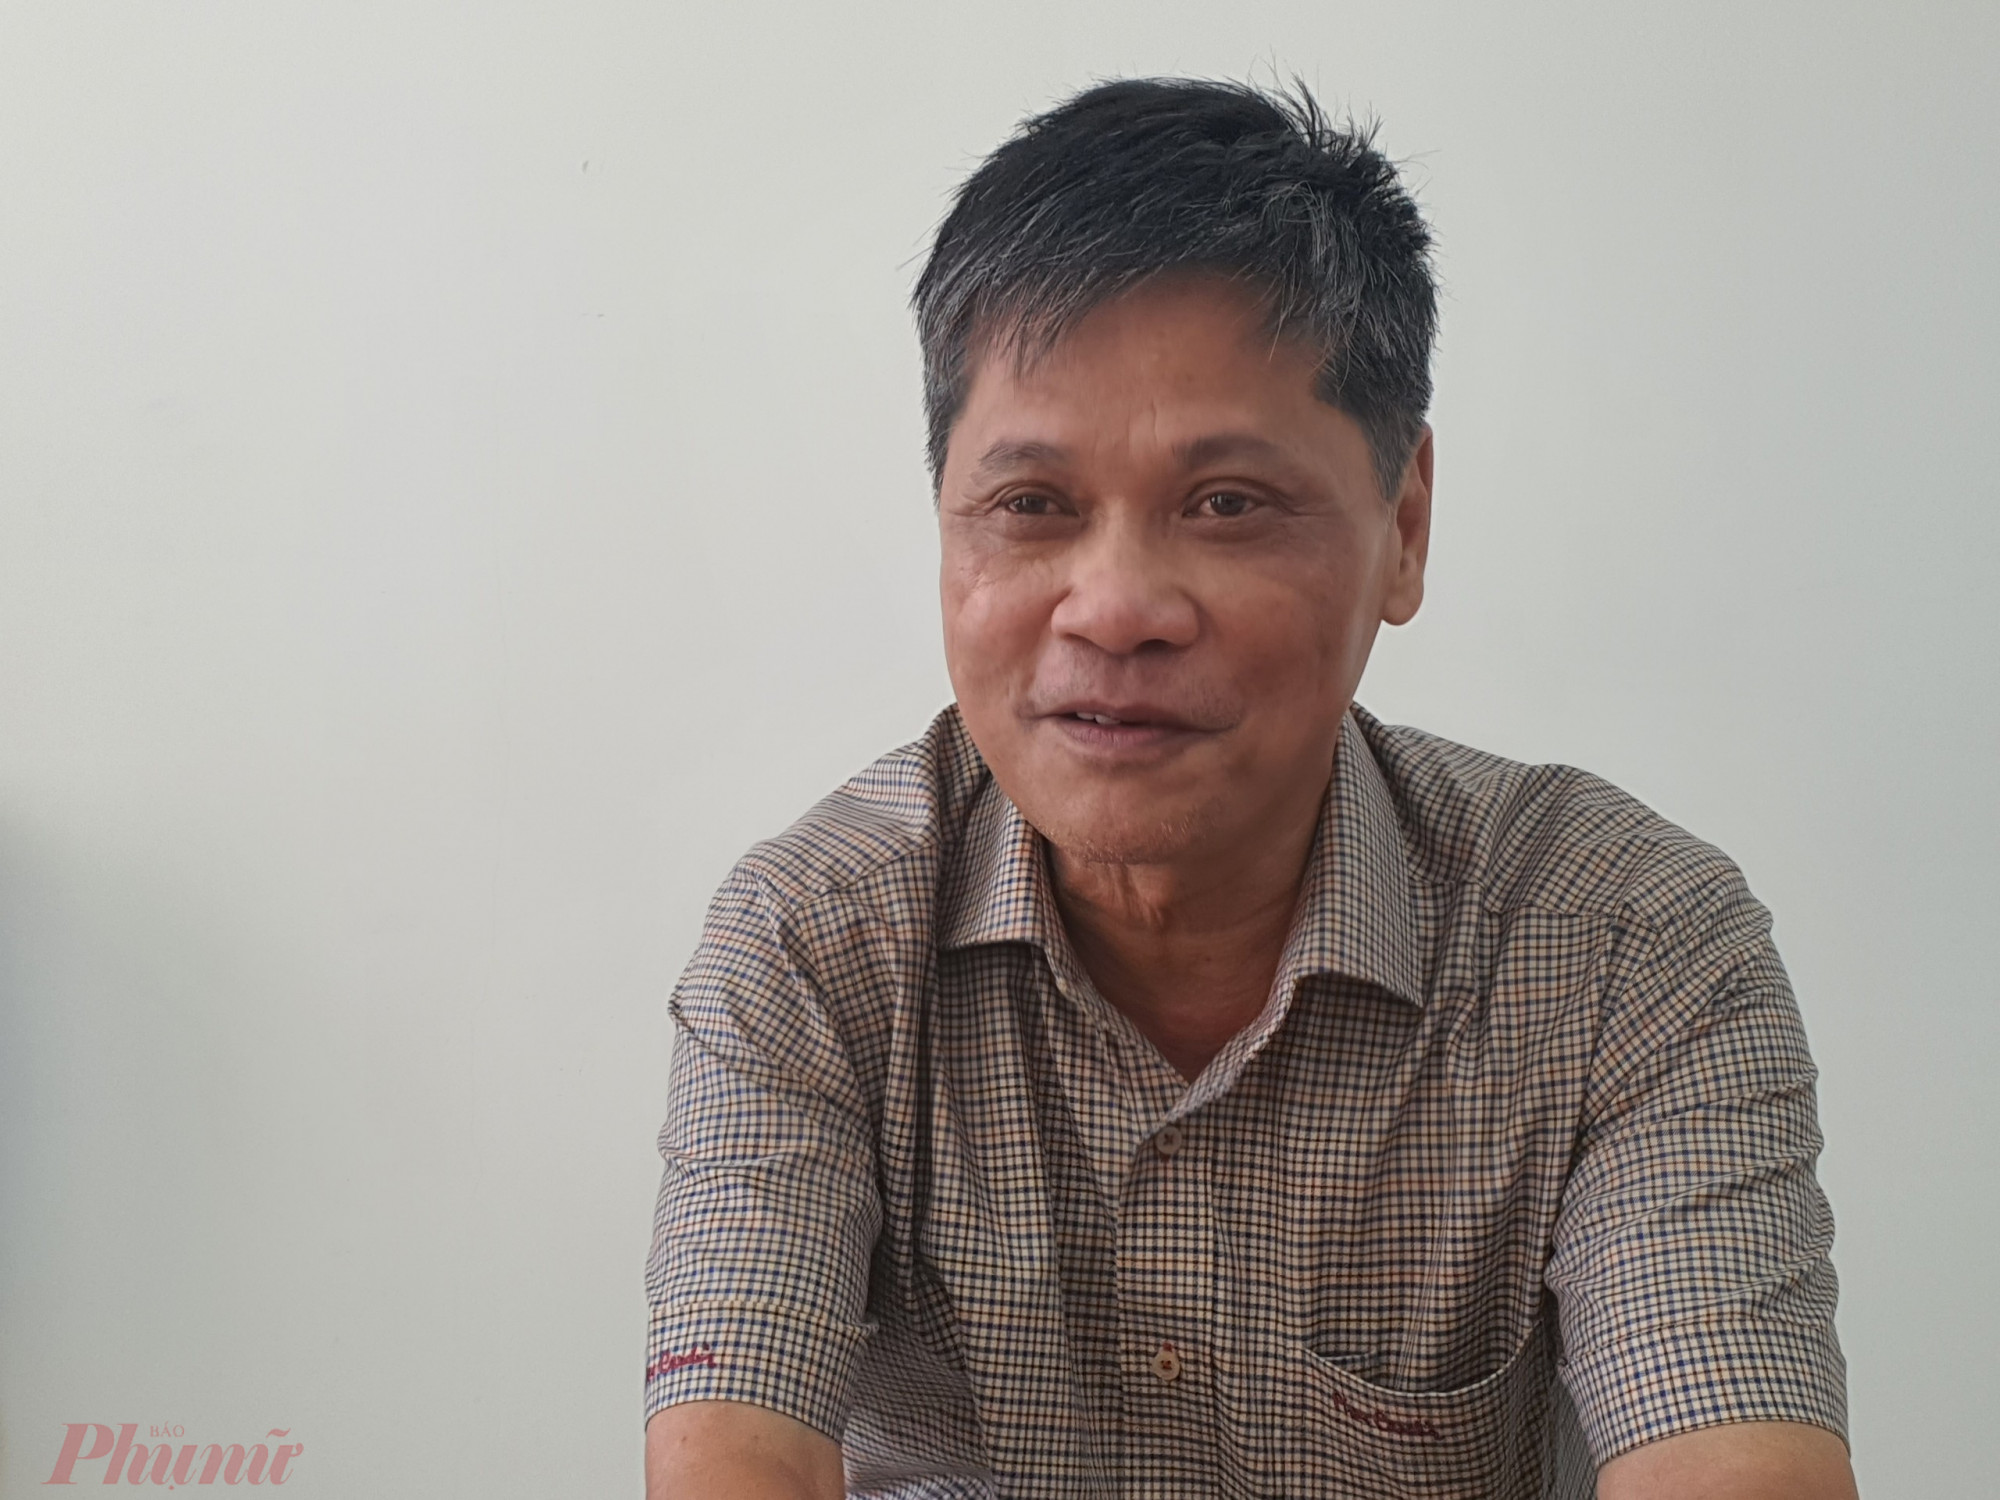 Ông Huỳnh Ngọc Quận - Phó chủ tịch UBND huyện Tư Nghĩa đương nhiệm - thừa nhận trách nhiệm của chính quyền địa phương trong việc quản lý để doanh nghiệp xây dựng dự án khi chưa đủ điều kiện